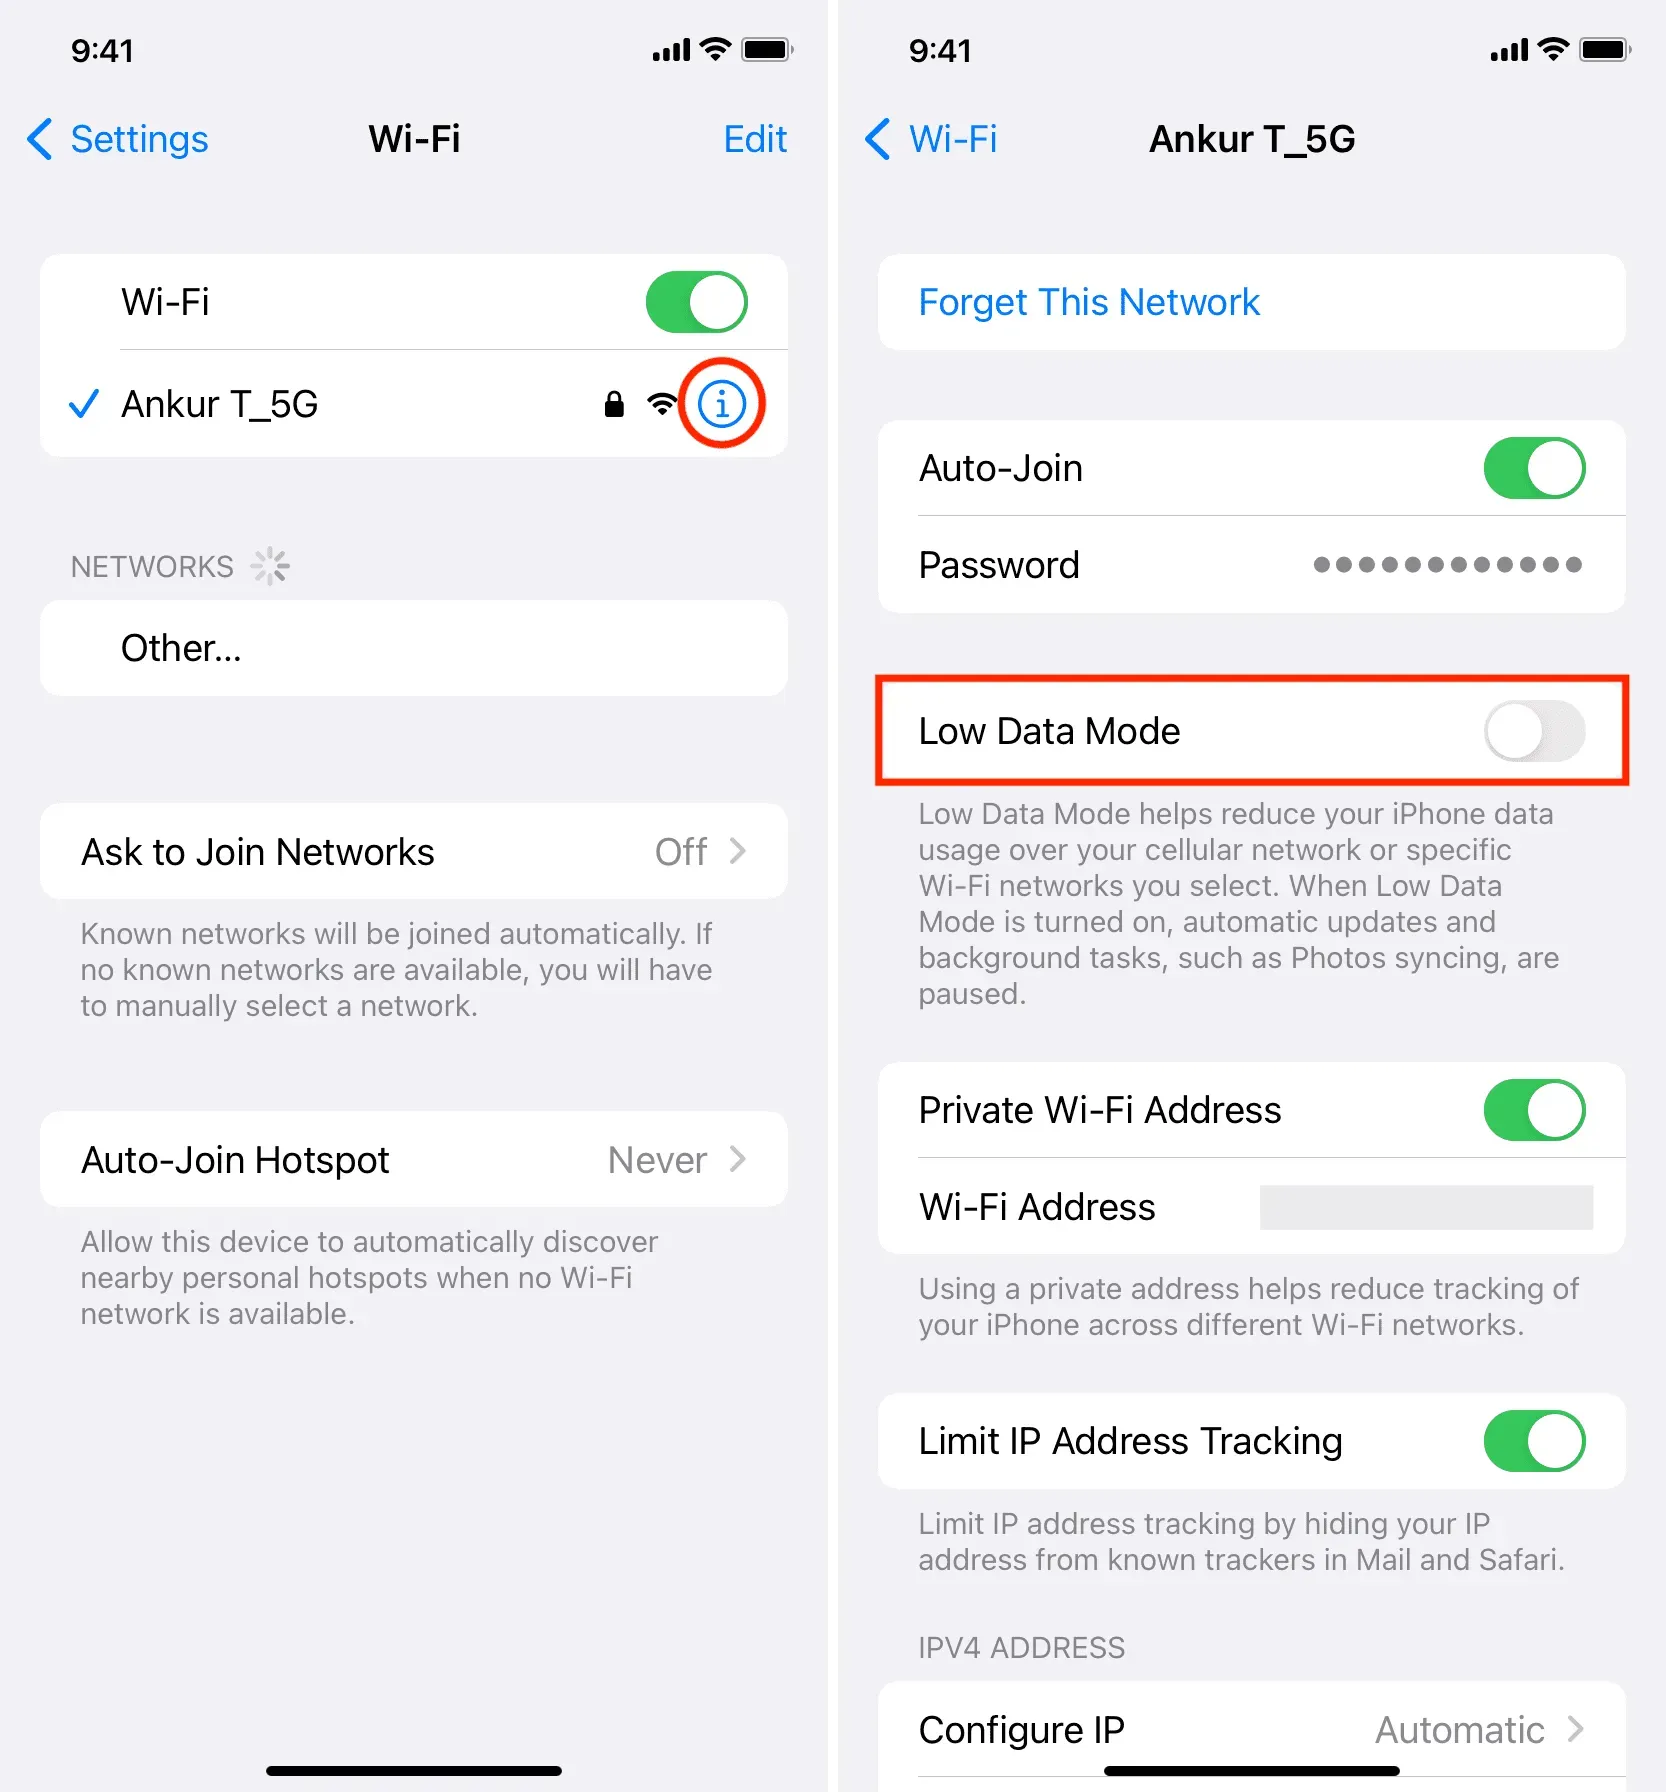 Schakel de Low Data-modus uit voor Wi-Fi op de iPhone